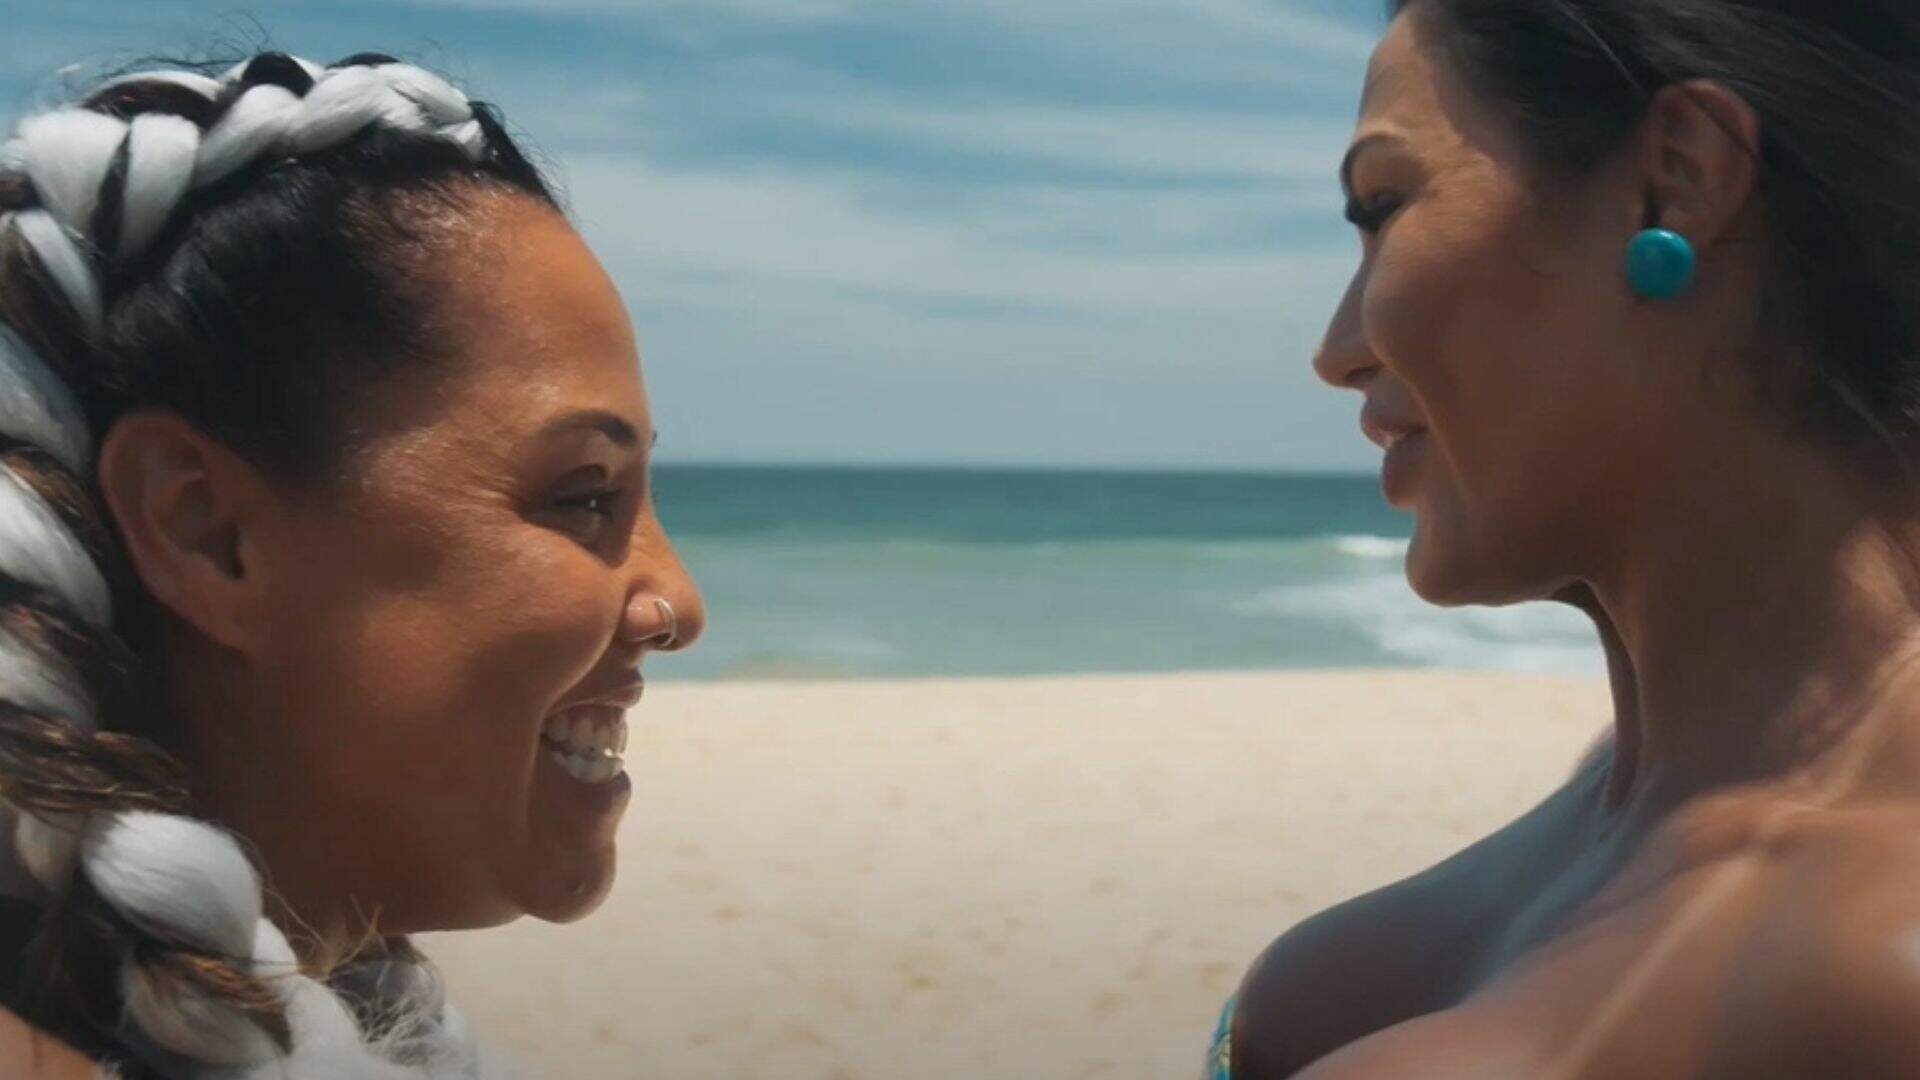 Gracyanne Barbosa e Evelyn Castro protagonizam cena de ciúmes na praia em novo teaser de ‘Tô de Graça – O Filme’ - Metropolitana FM